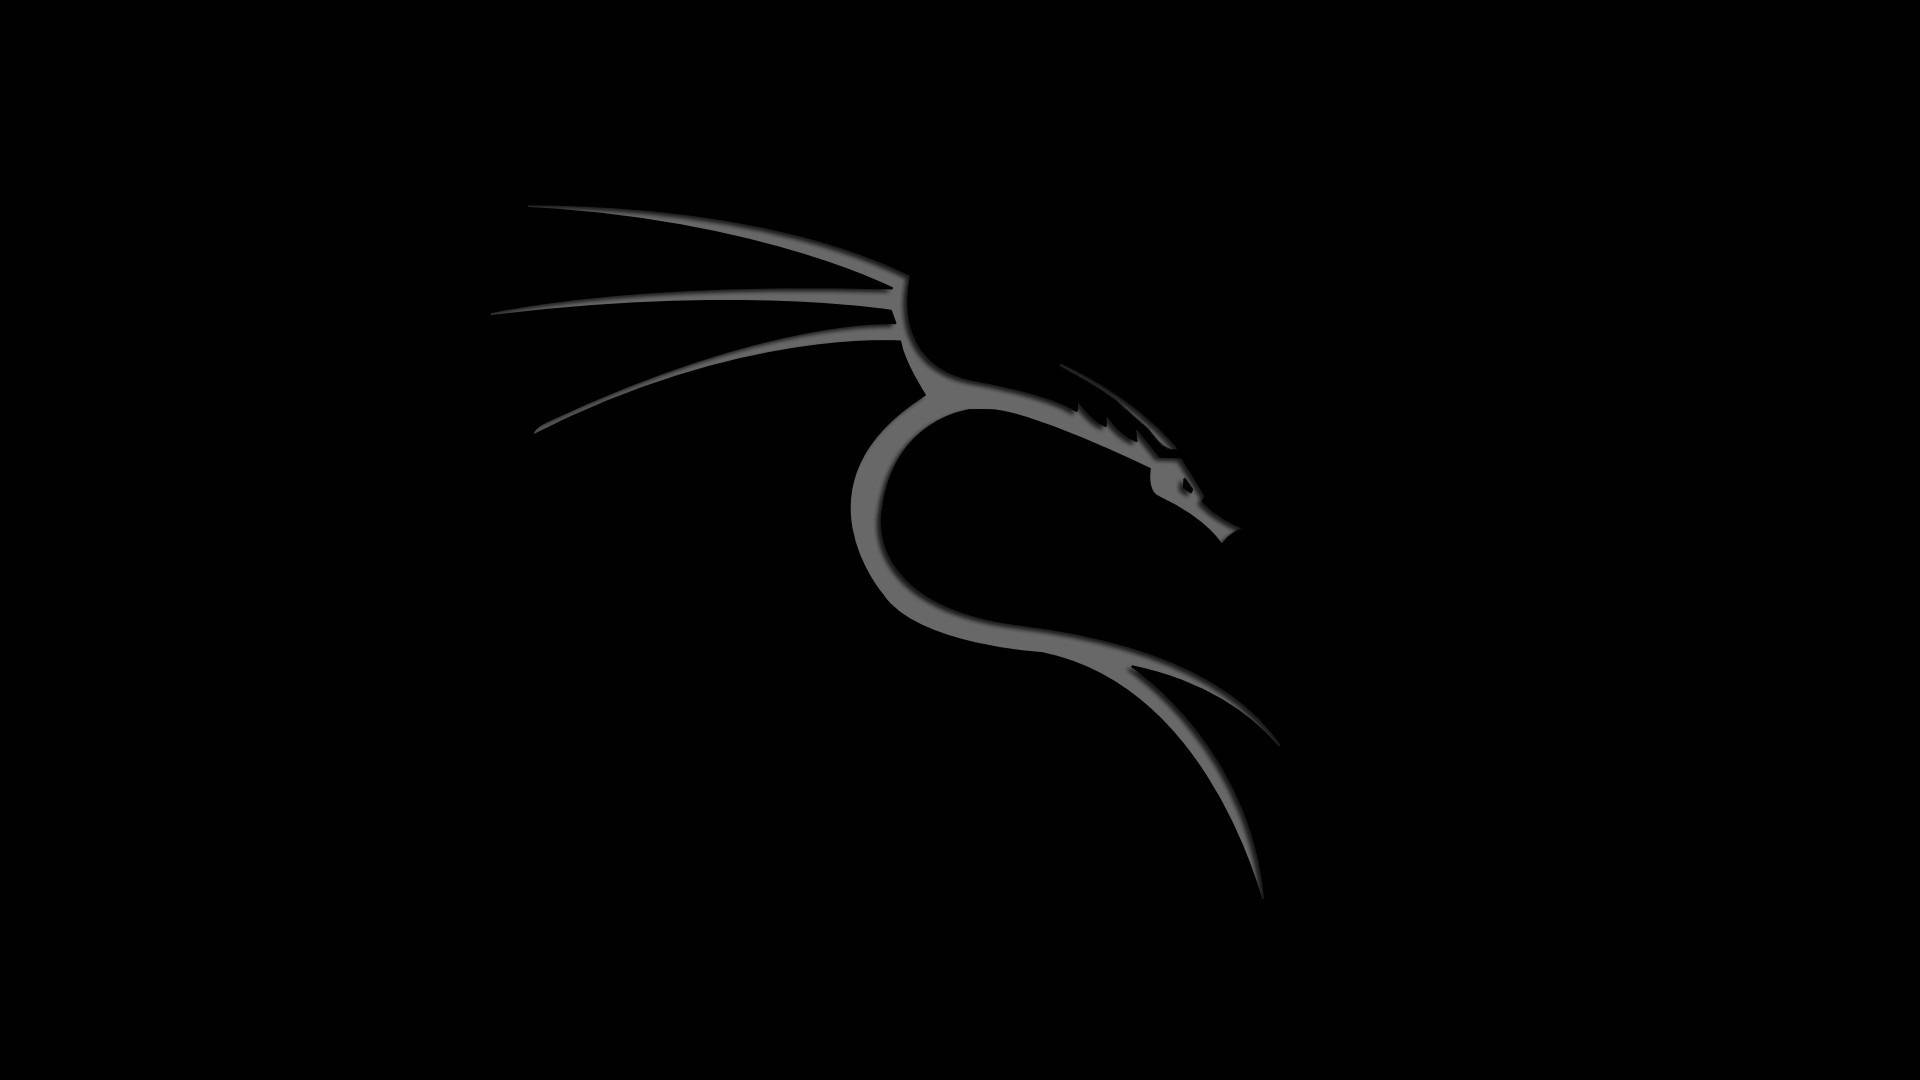 Kali Linux OS Dragon Black Wallpaper